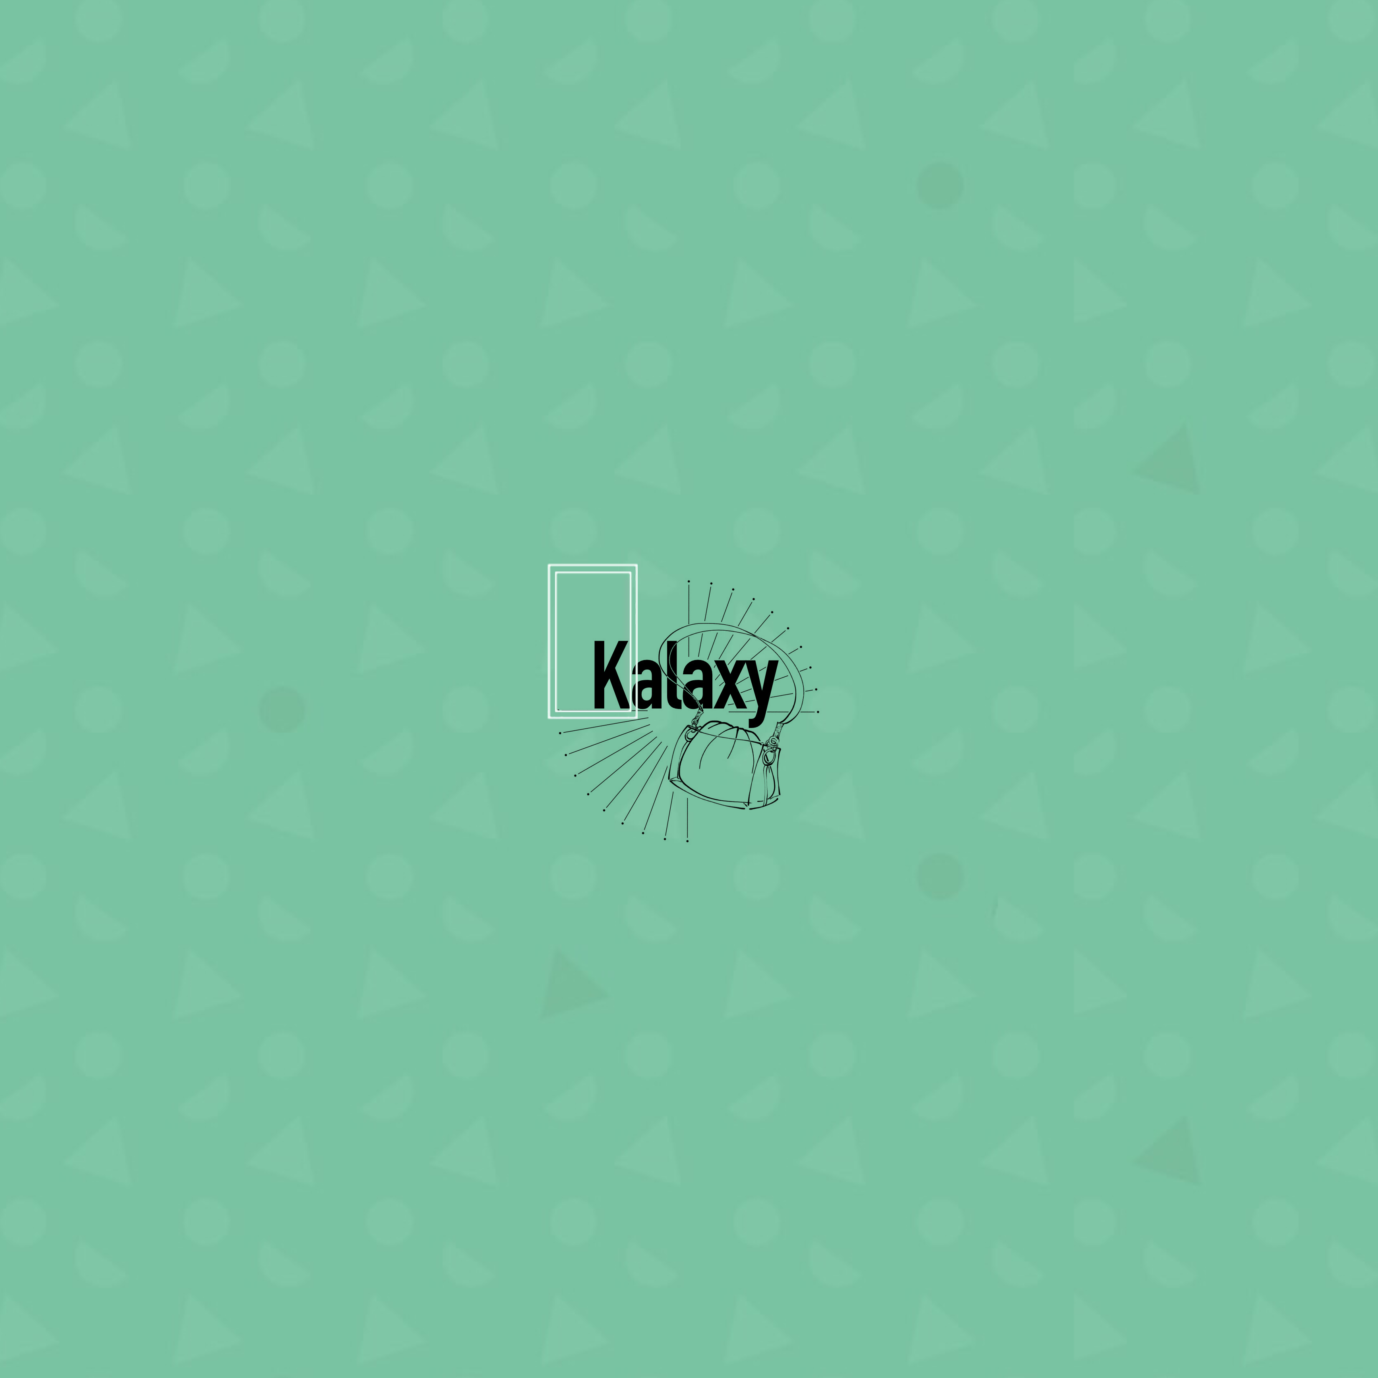 Kalaxy